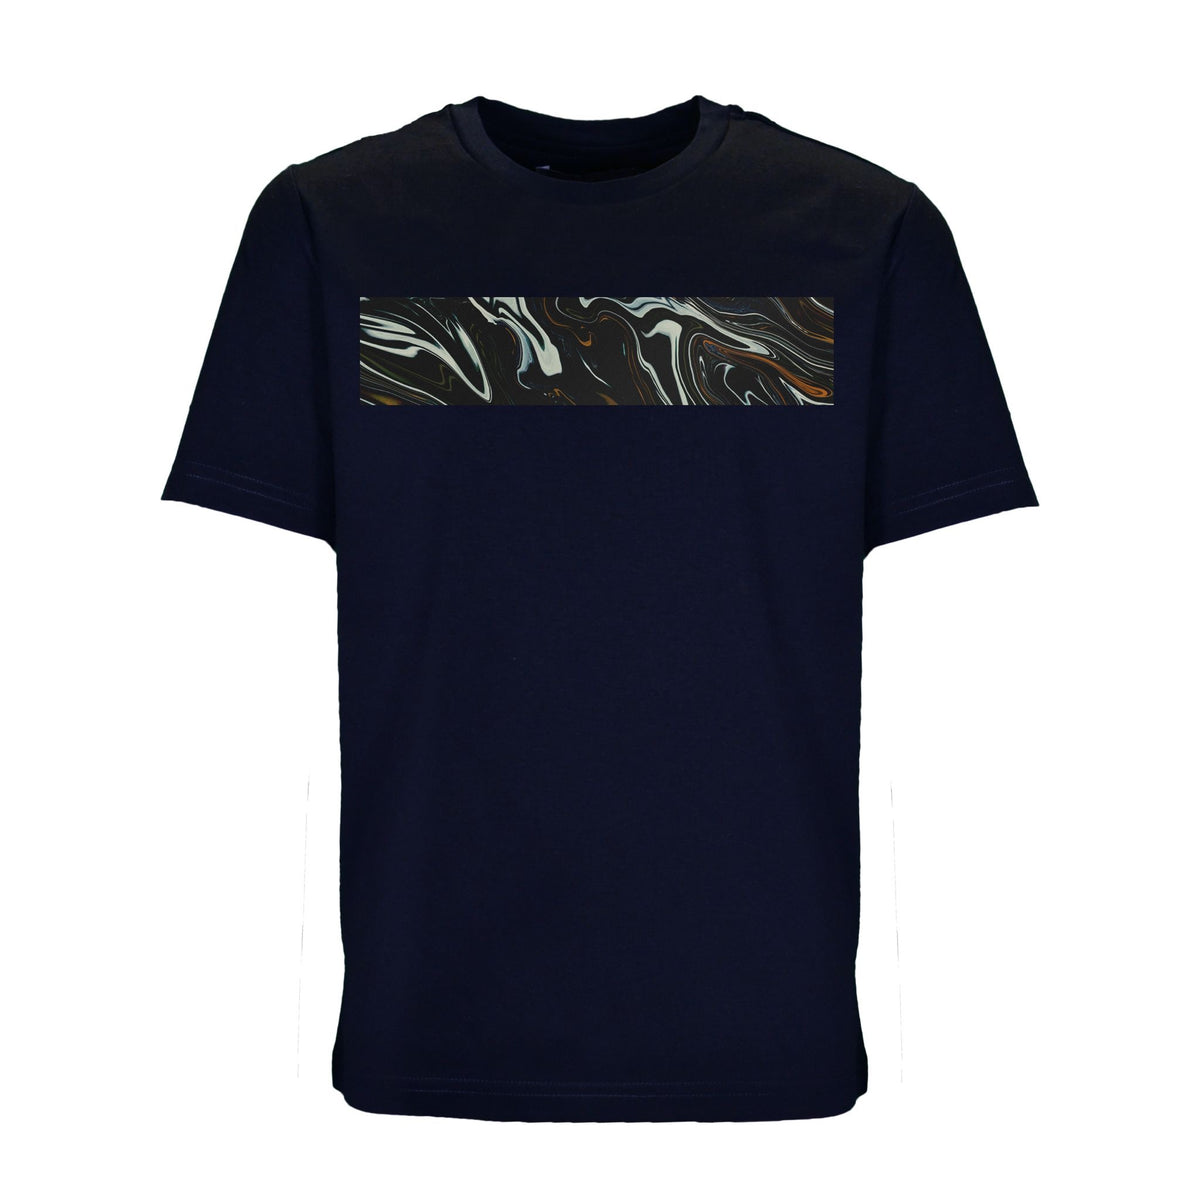 Moda Bandidos Navy Oil T-Shirt